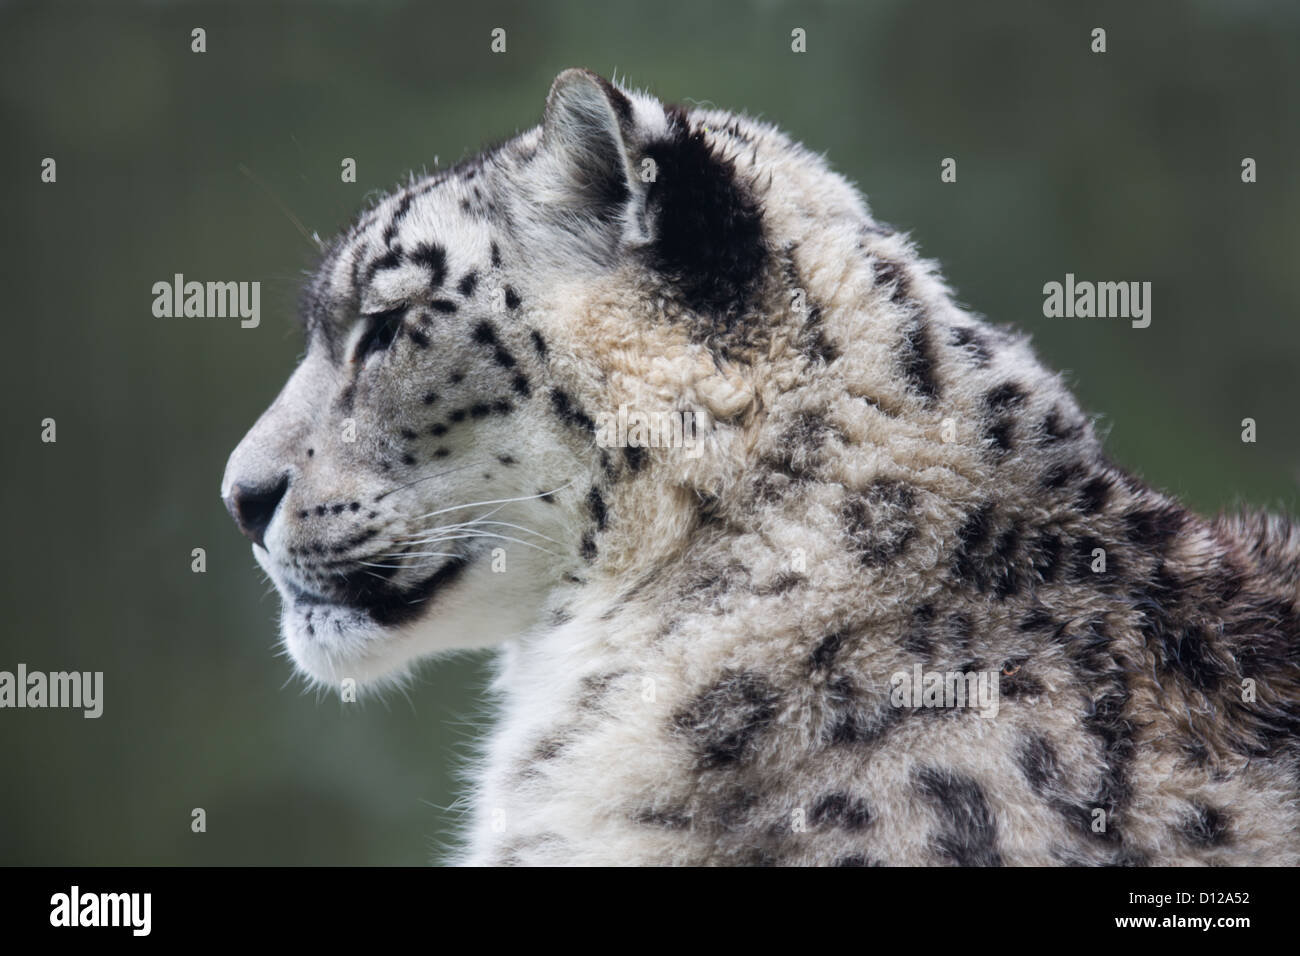 Une image haute résolution d'un léopard des neiges Banque D'Images